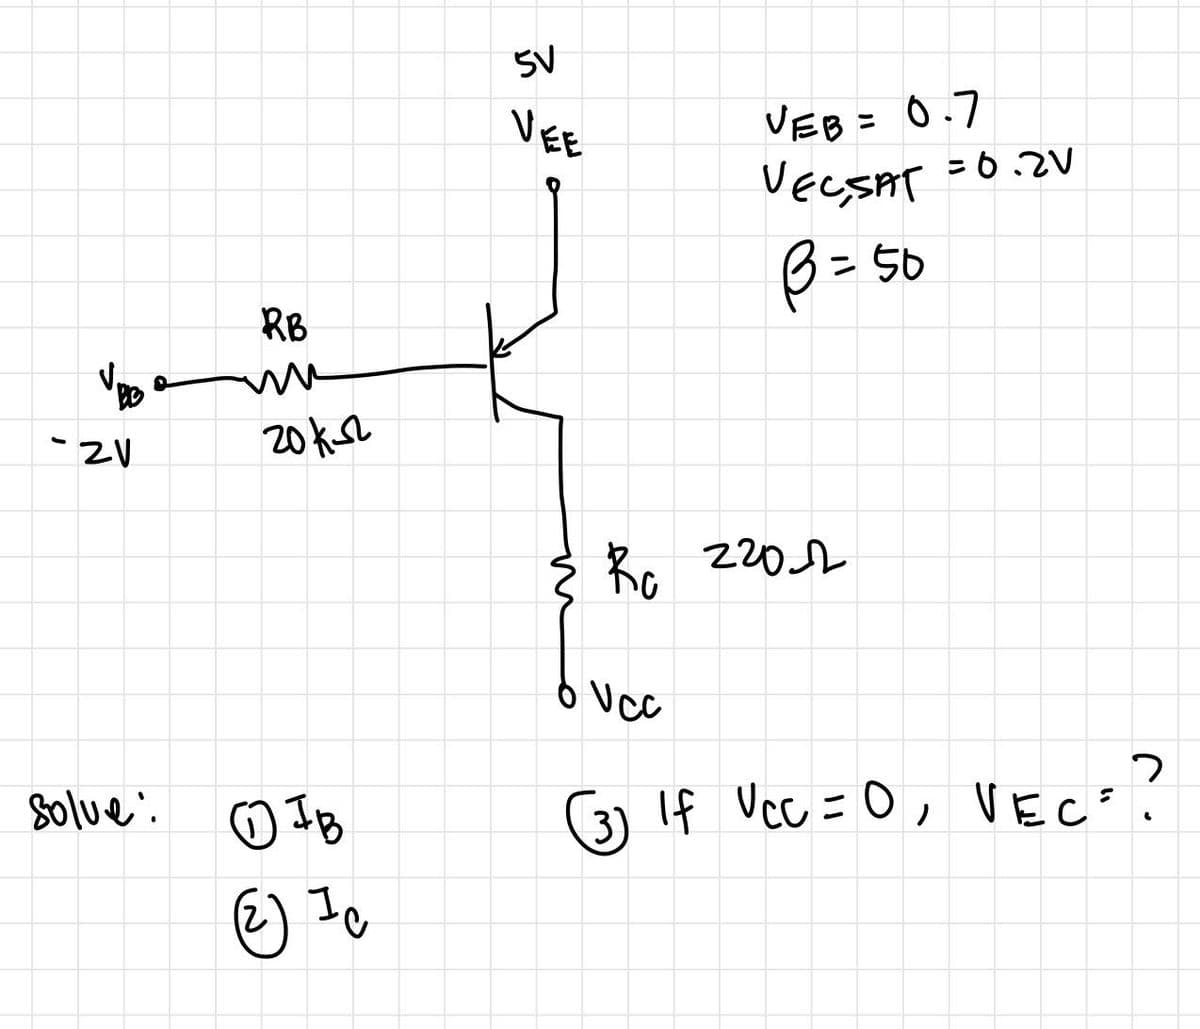 - ZV
solve:
RB
m
20K-2
отв
(2) Ic
5V
VEE
VEB = 0.7
VEC, SAT = 0.2V
B = 50
Ro 2202
o Vcc
(3) If VCC = 0, VEC = ?